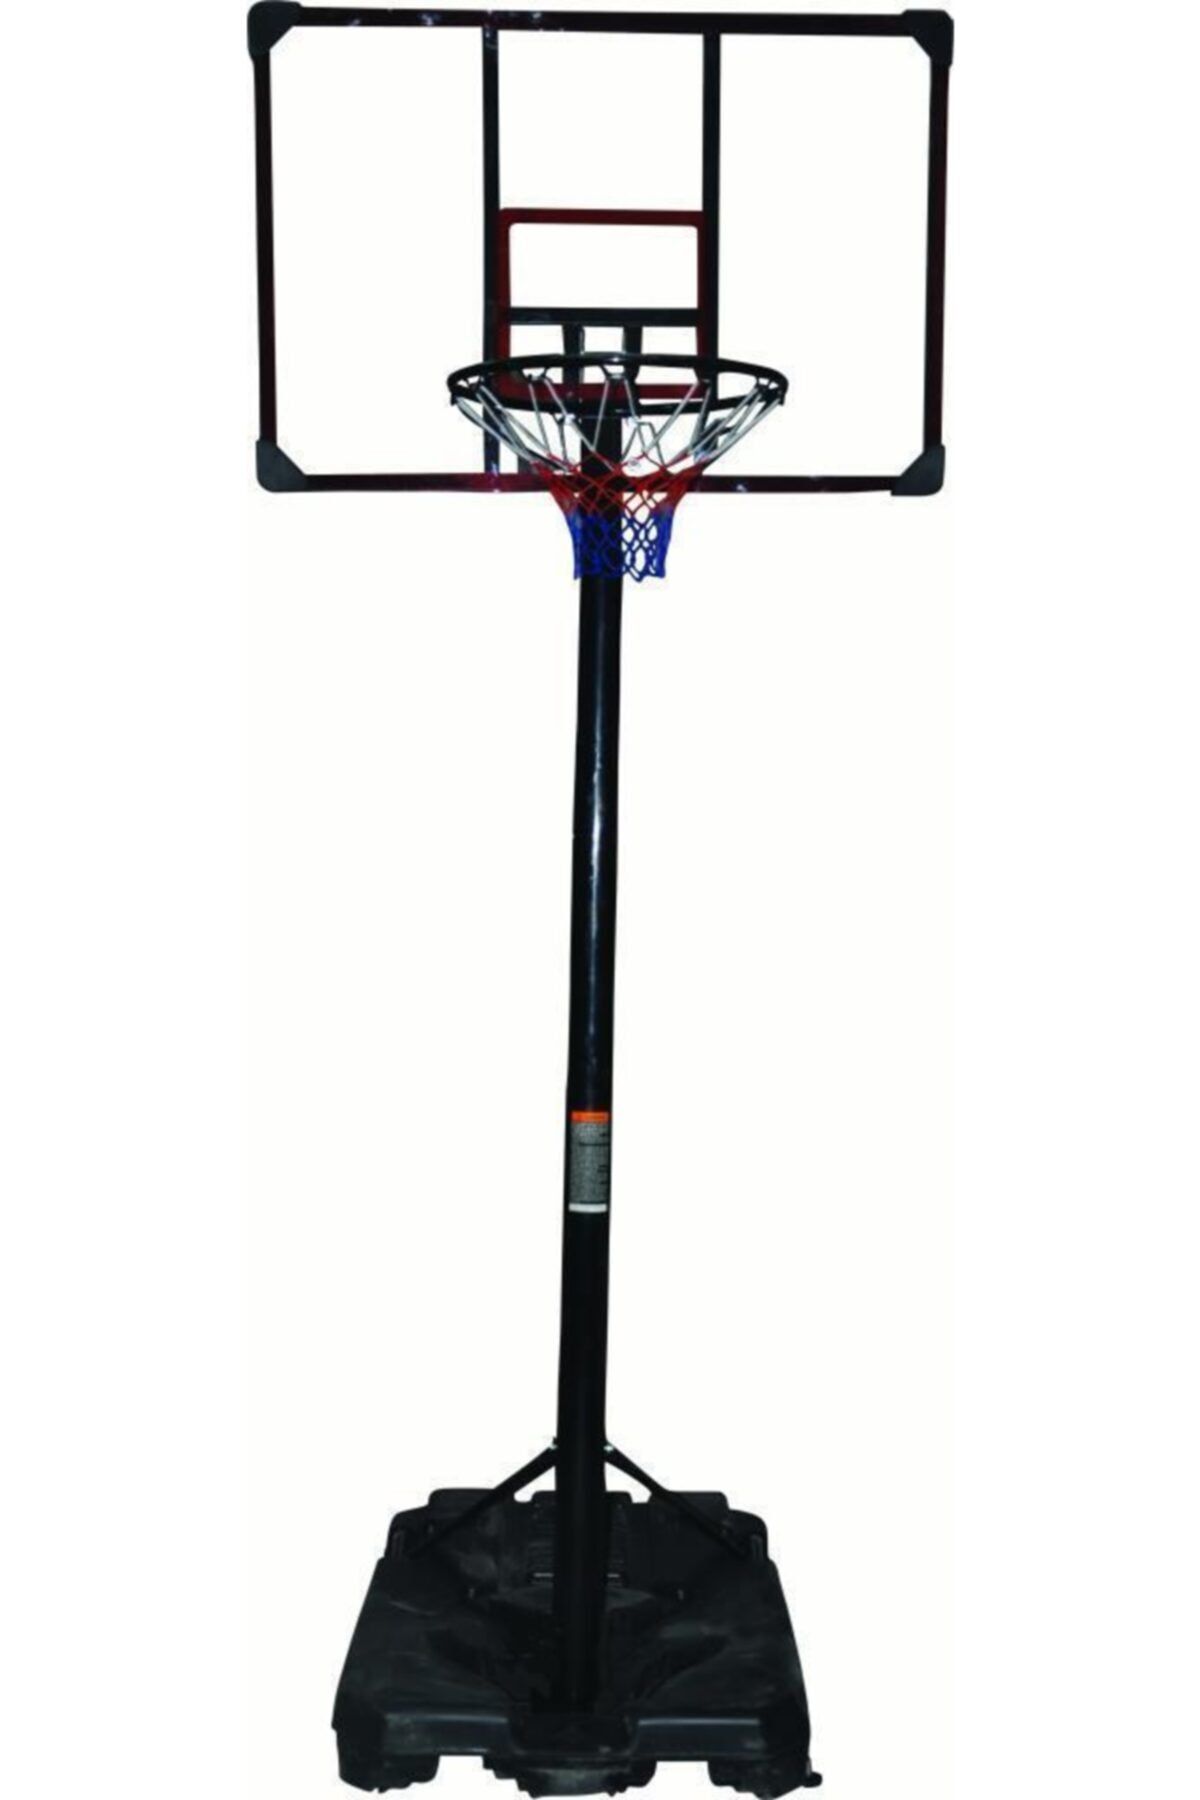 Delta Ayaklı Yükseklik Ayarlanabilir Portatif Basketbol Potası